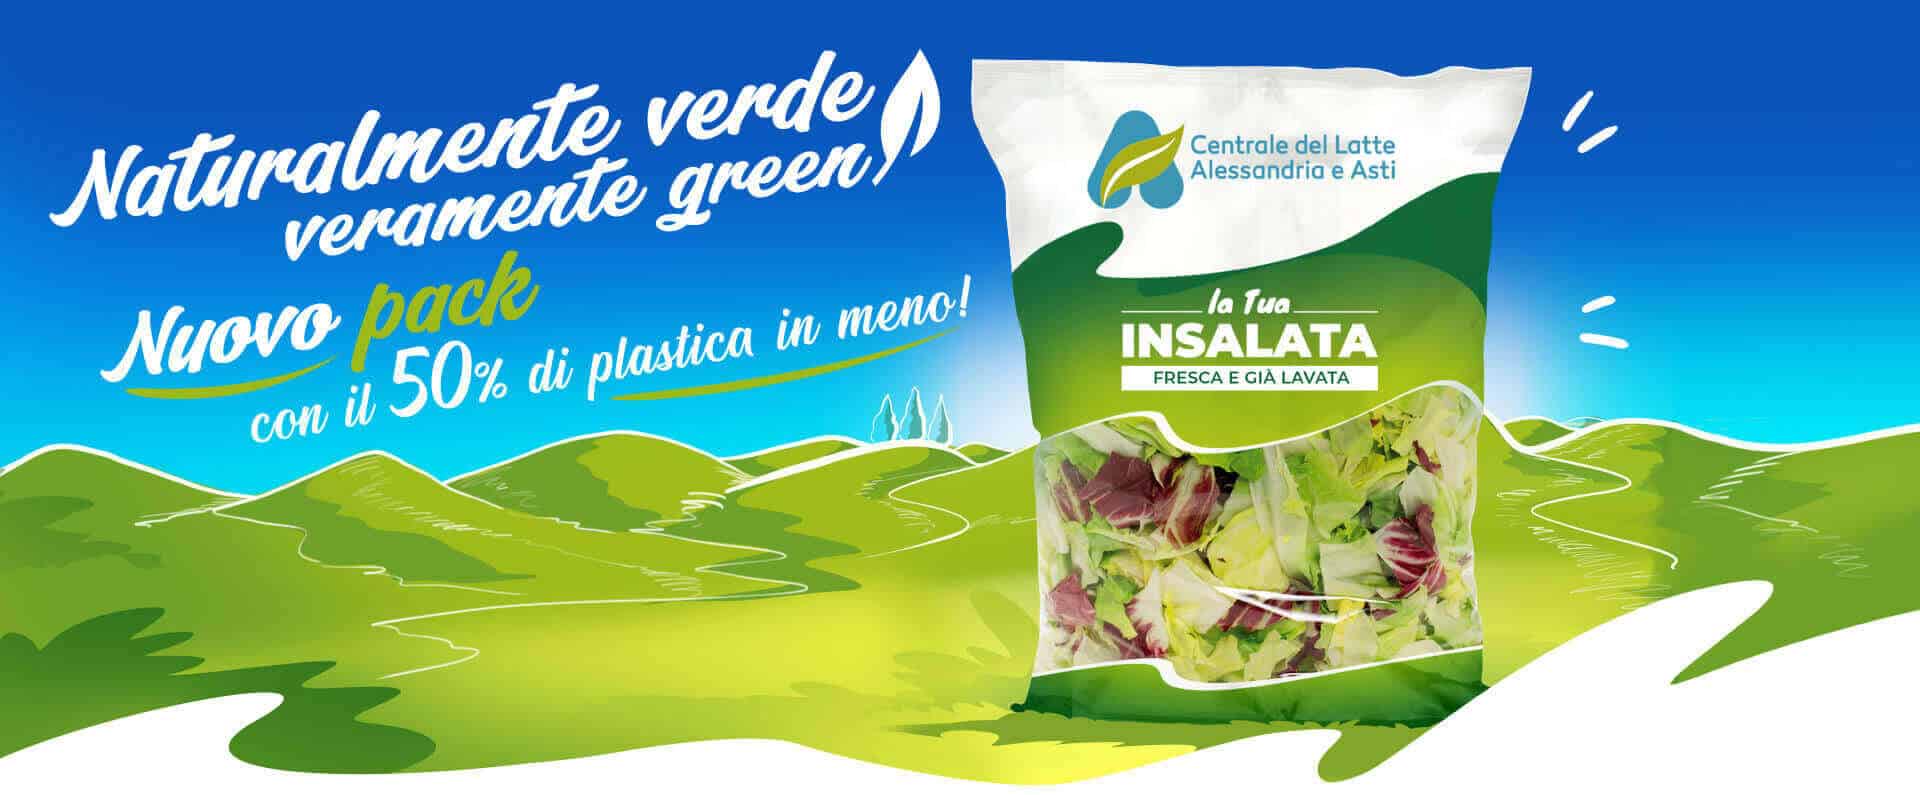 Centrale del Latte di Alessandria e Asti Campagna Green Insalata advertising